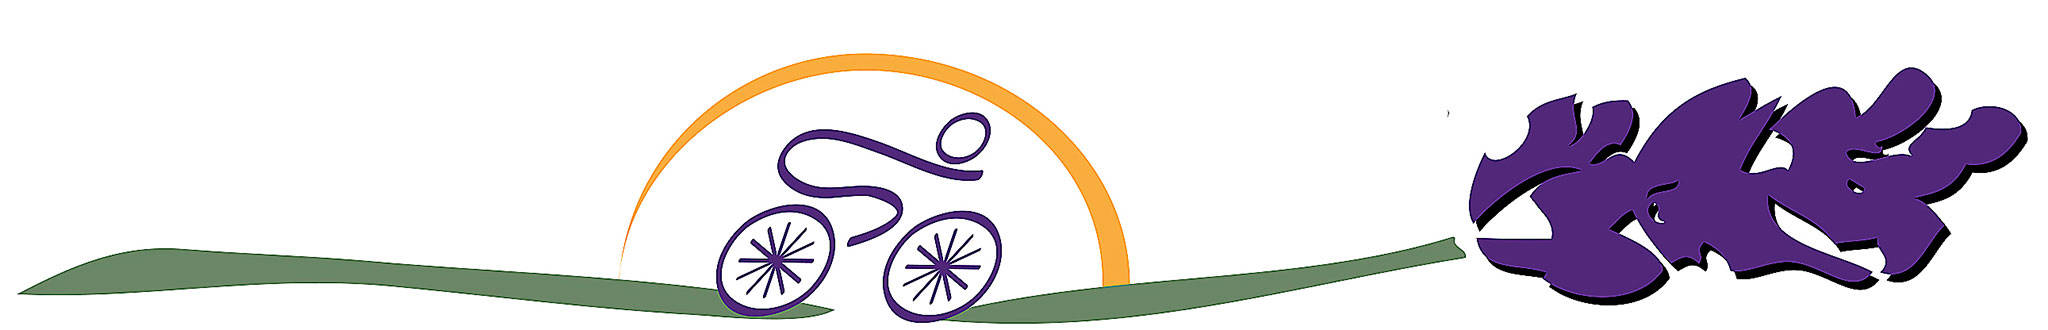 ‘Wheel’ fun set for fifth Tour de Lavender